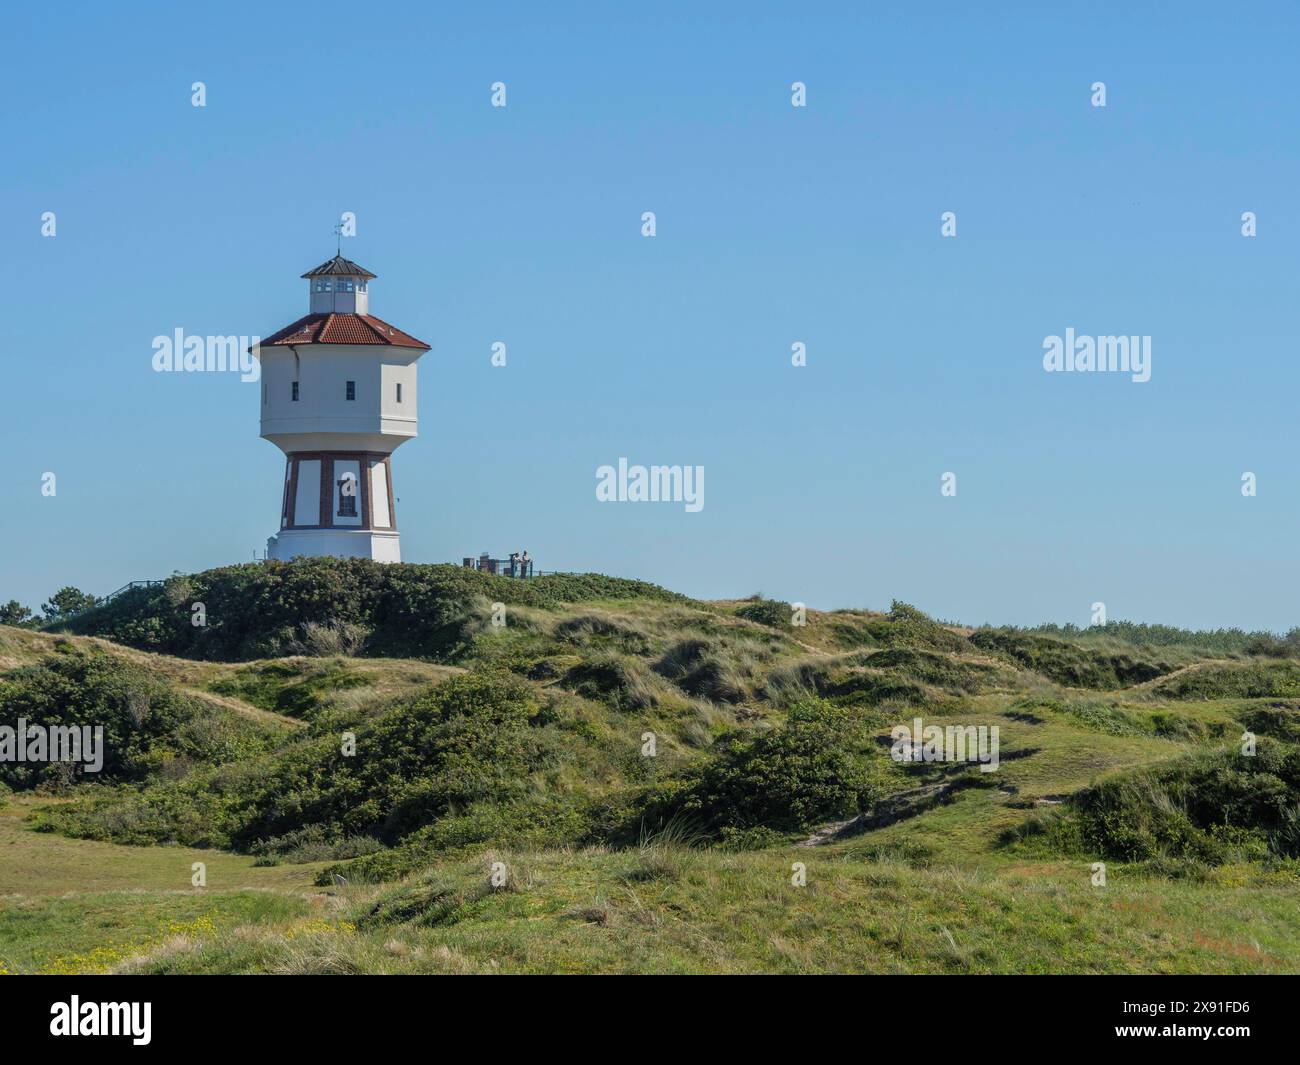 Ein Leuchtturm steht auf einem grasbewachsenen Hügel unter blauem Himmel, die Atmosphäre ist friedlich und ruhig, Wasserturm in den Dünen einer Insel, langeoog, deutschland Stockfoto